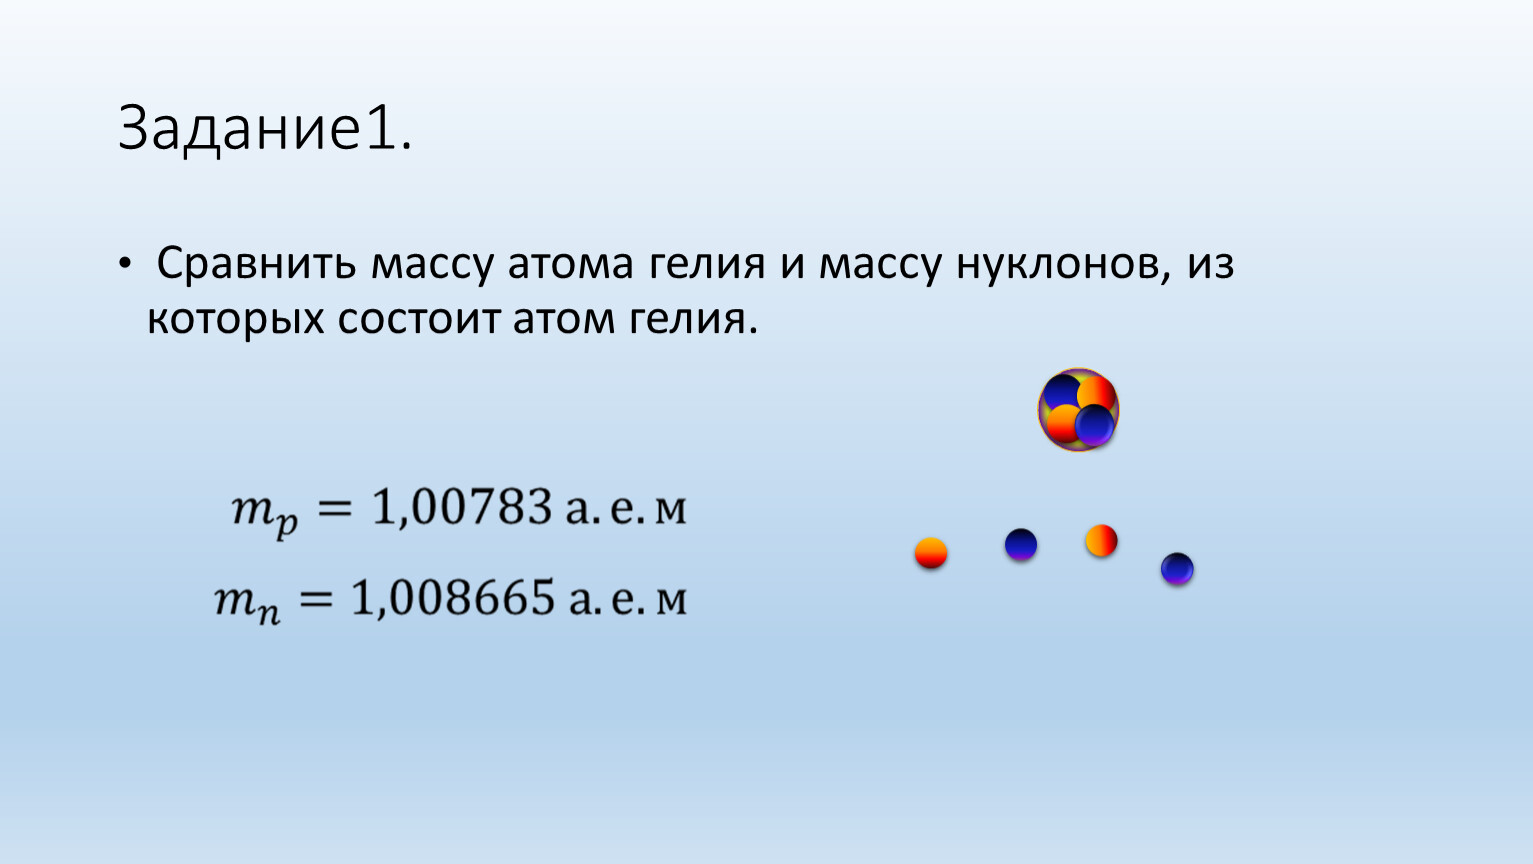 Определите массу атома воды. Гелий атомная масса. Масса атома гелия. Масса ядра атома гелия. Вес атома гелия.